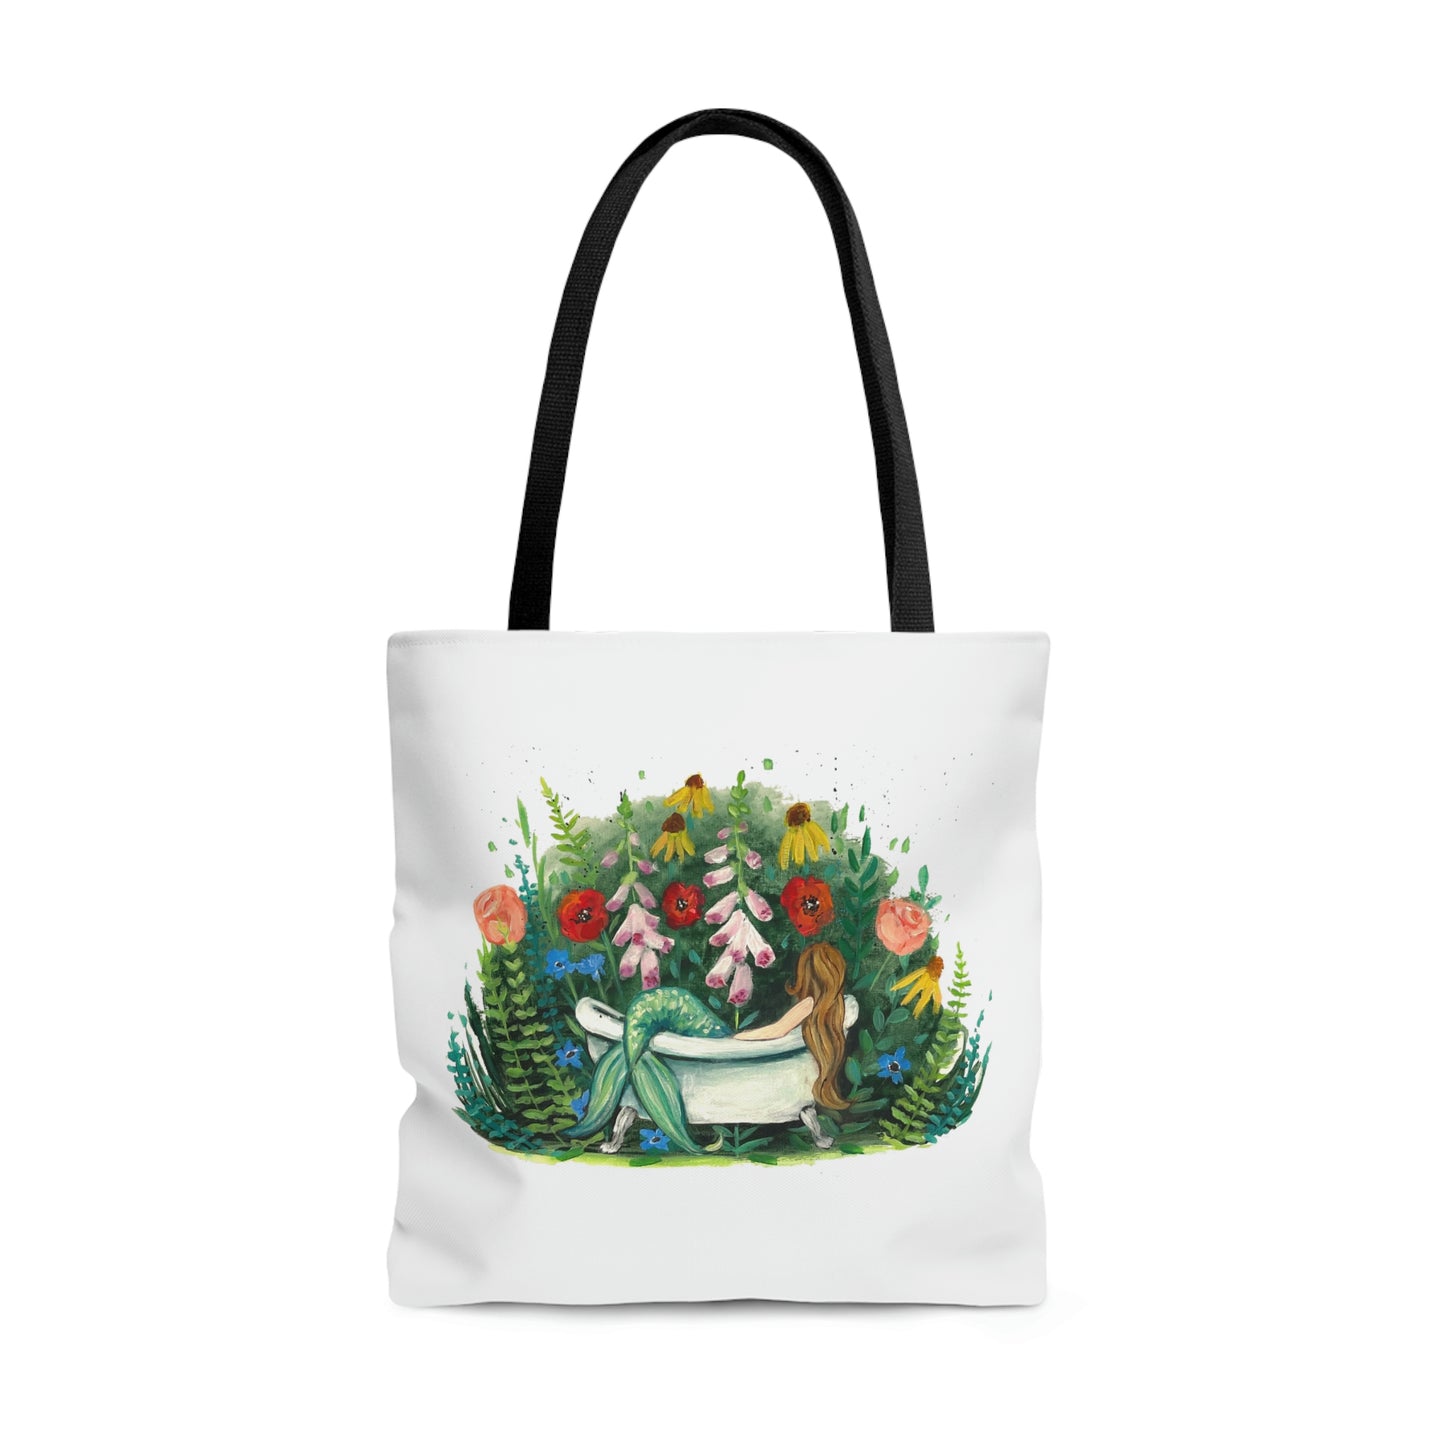 Botanical Dreams - Tote Bag